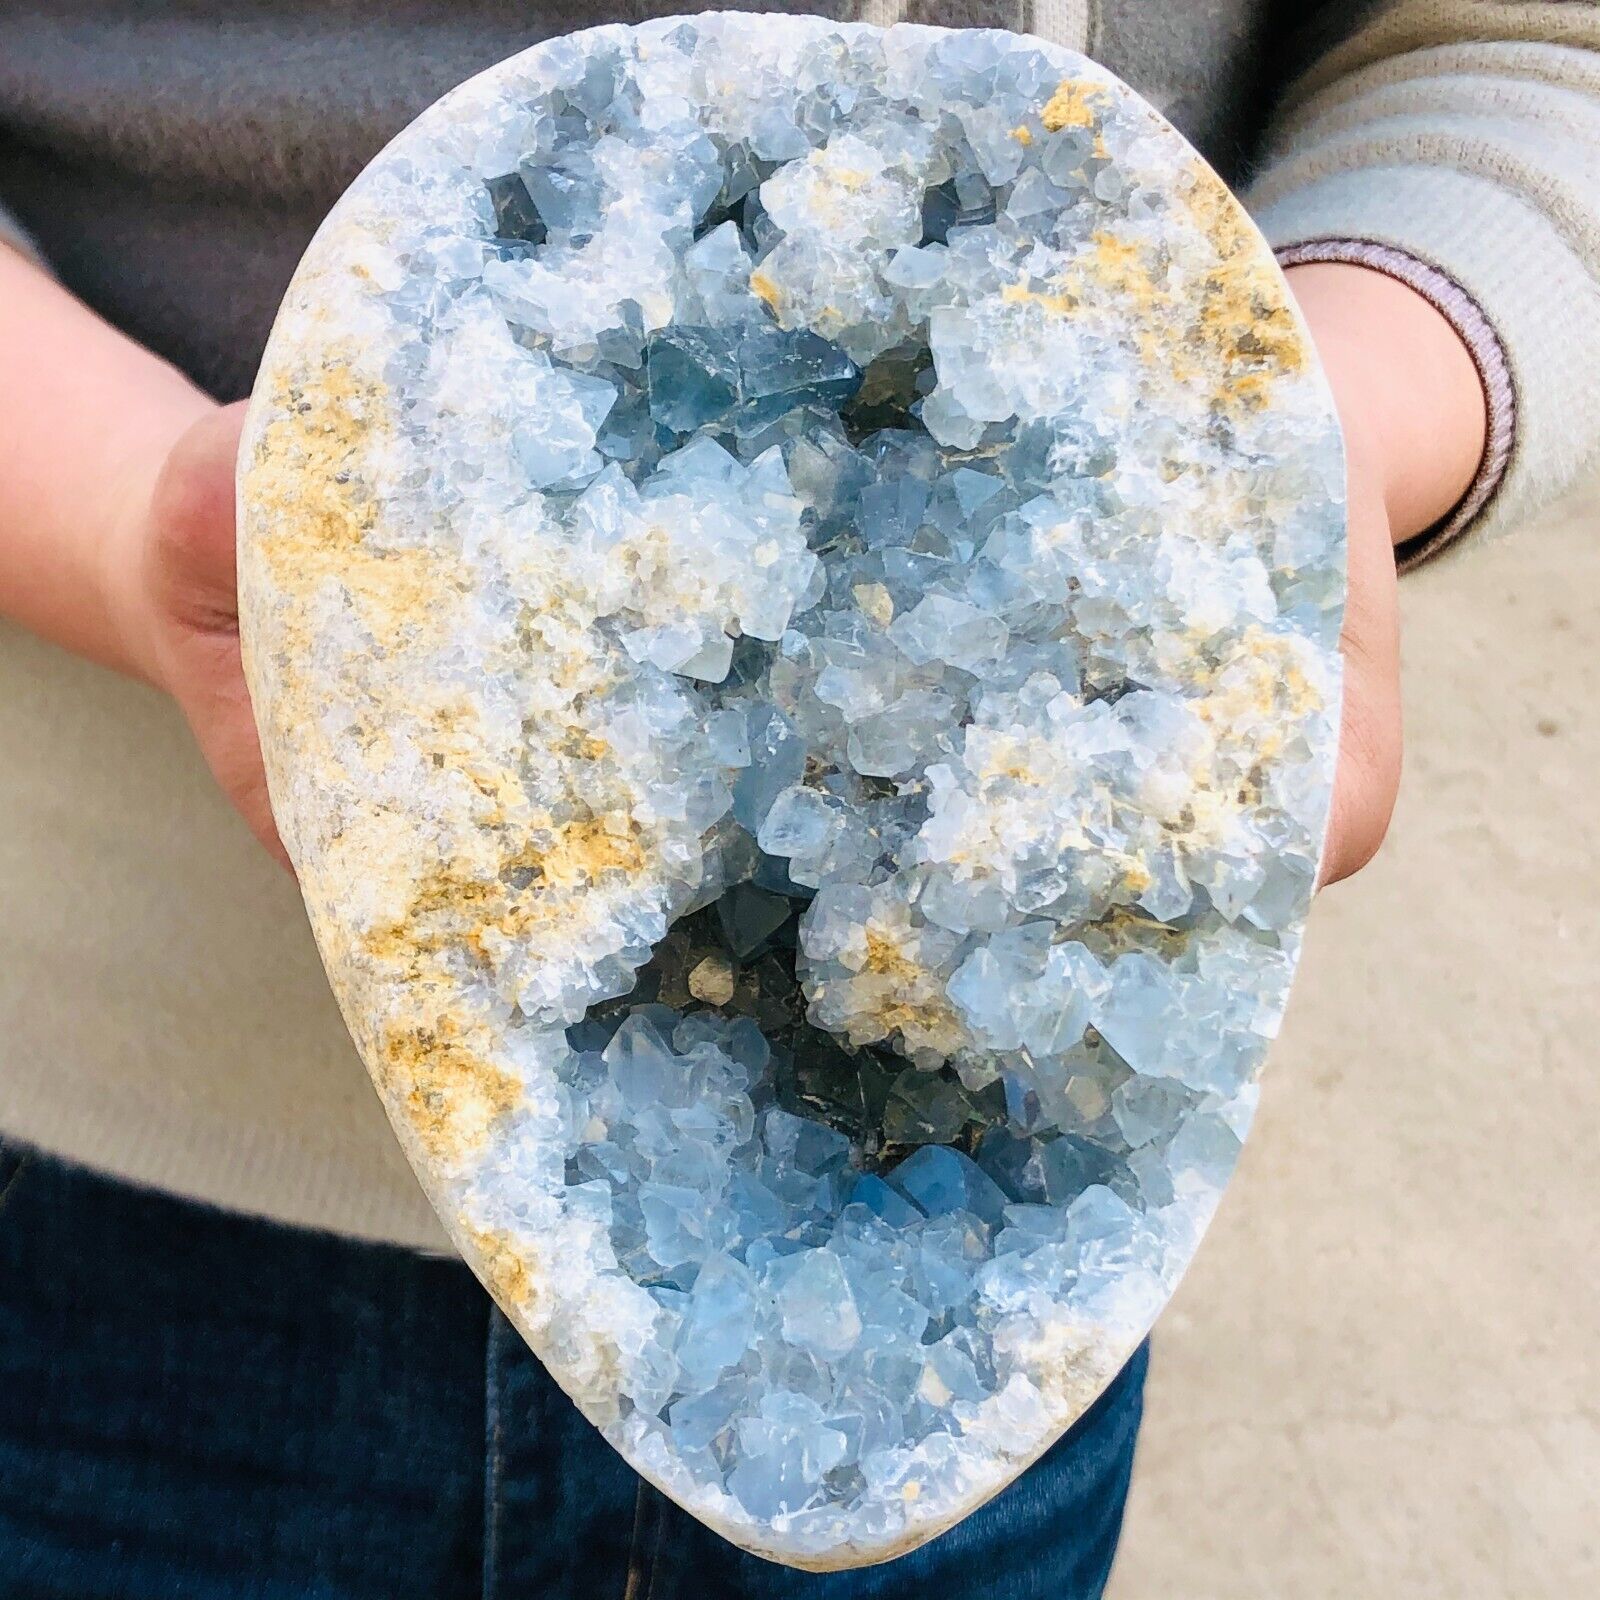 6.73lb Natural blue celestite geode quartz crystal mineral specimen healing